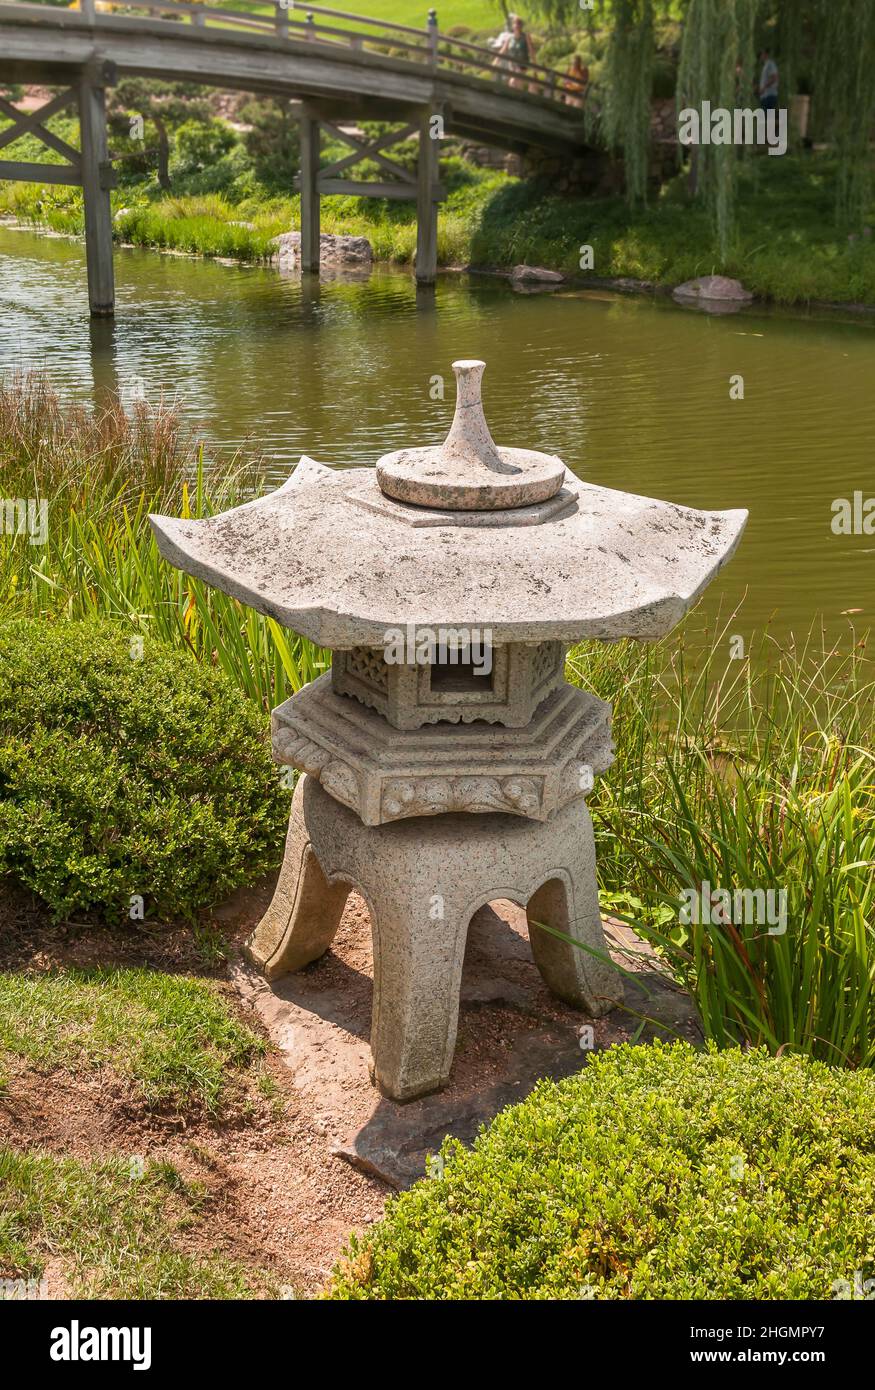 Japanese style stone lantern in the Japanese Island of the Chicago Botanic garden, Glencoe, USA Stock Photo